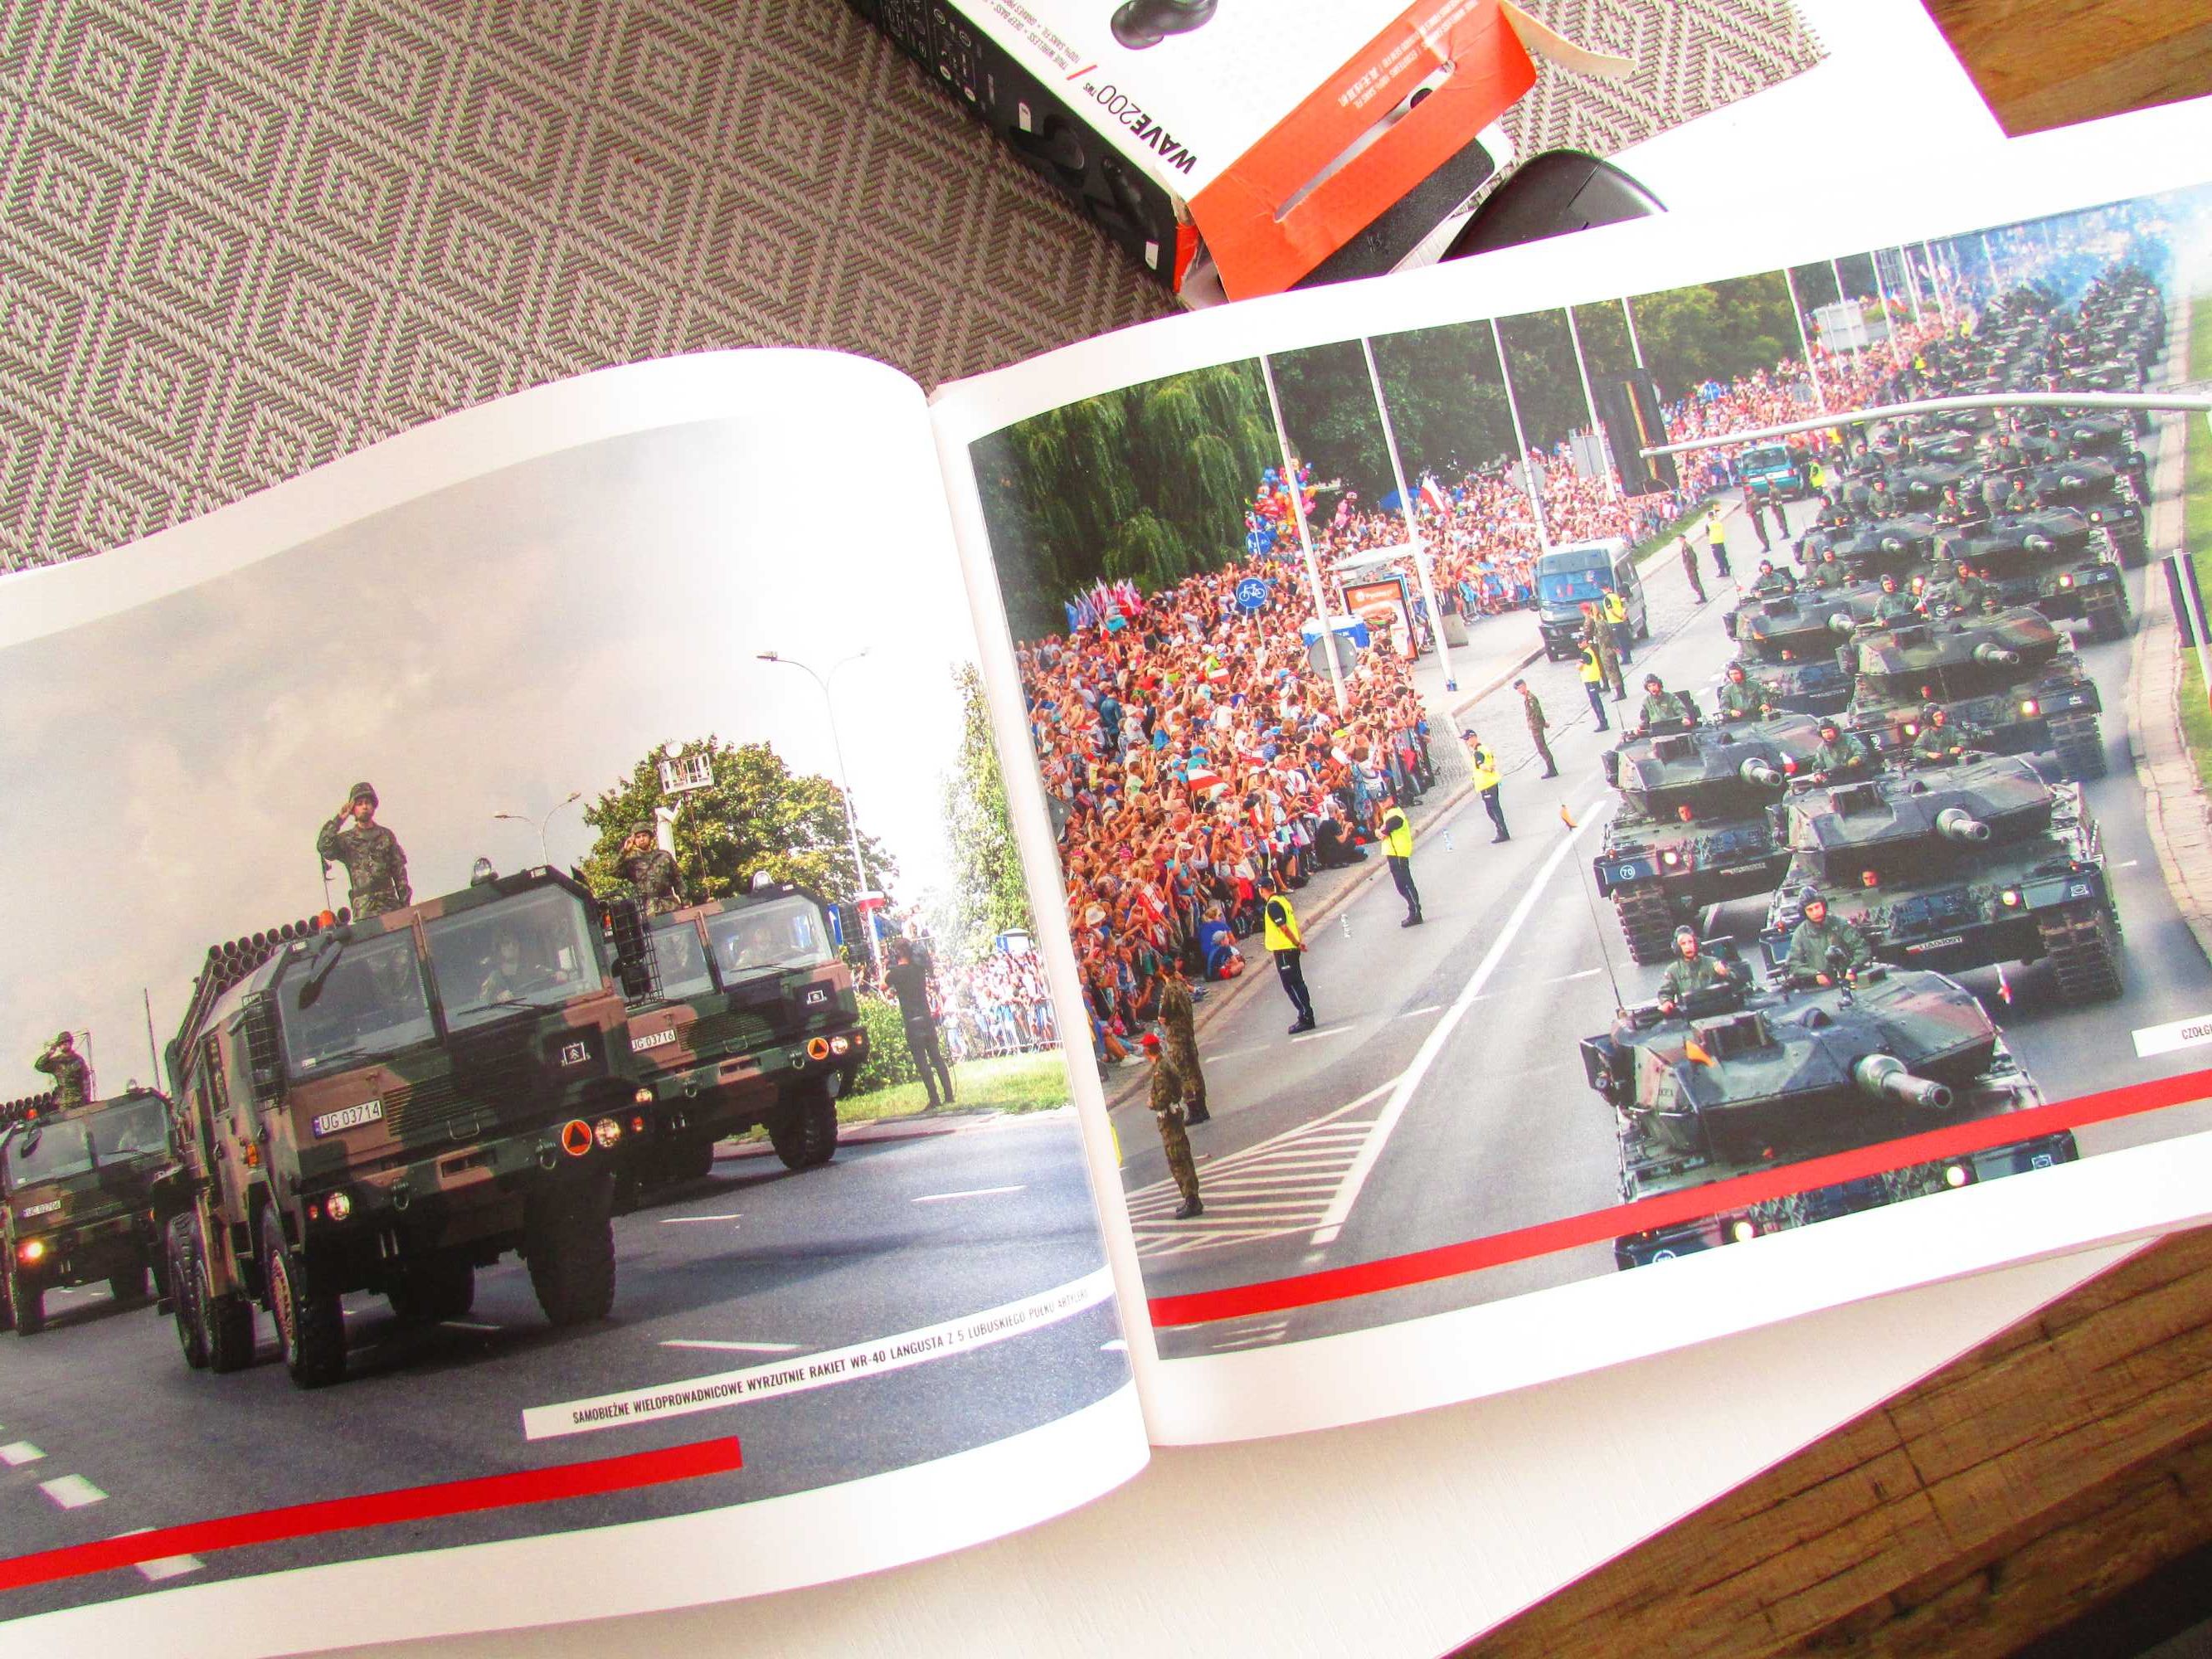 Album Wielka defilada Niepodległości - wojsko, zdjęcia - 84 strony.